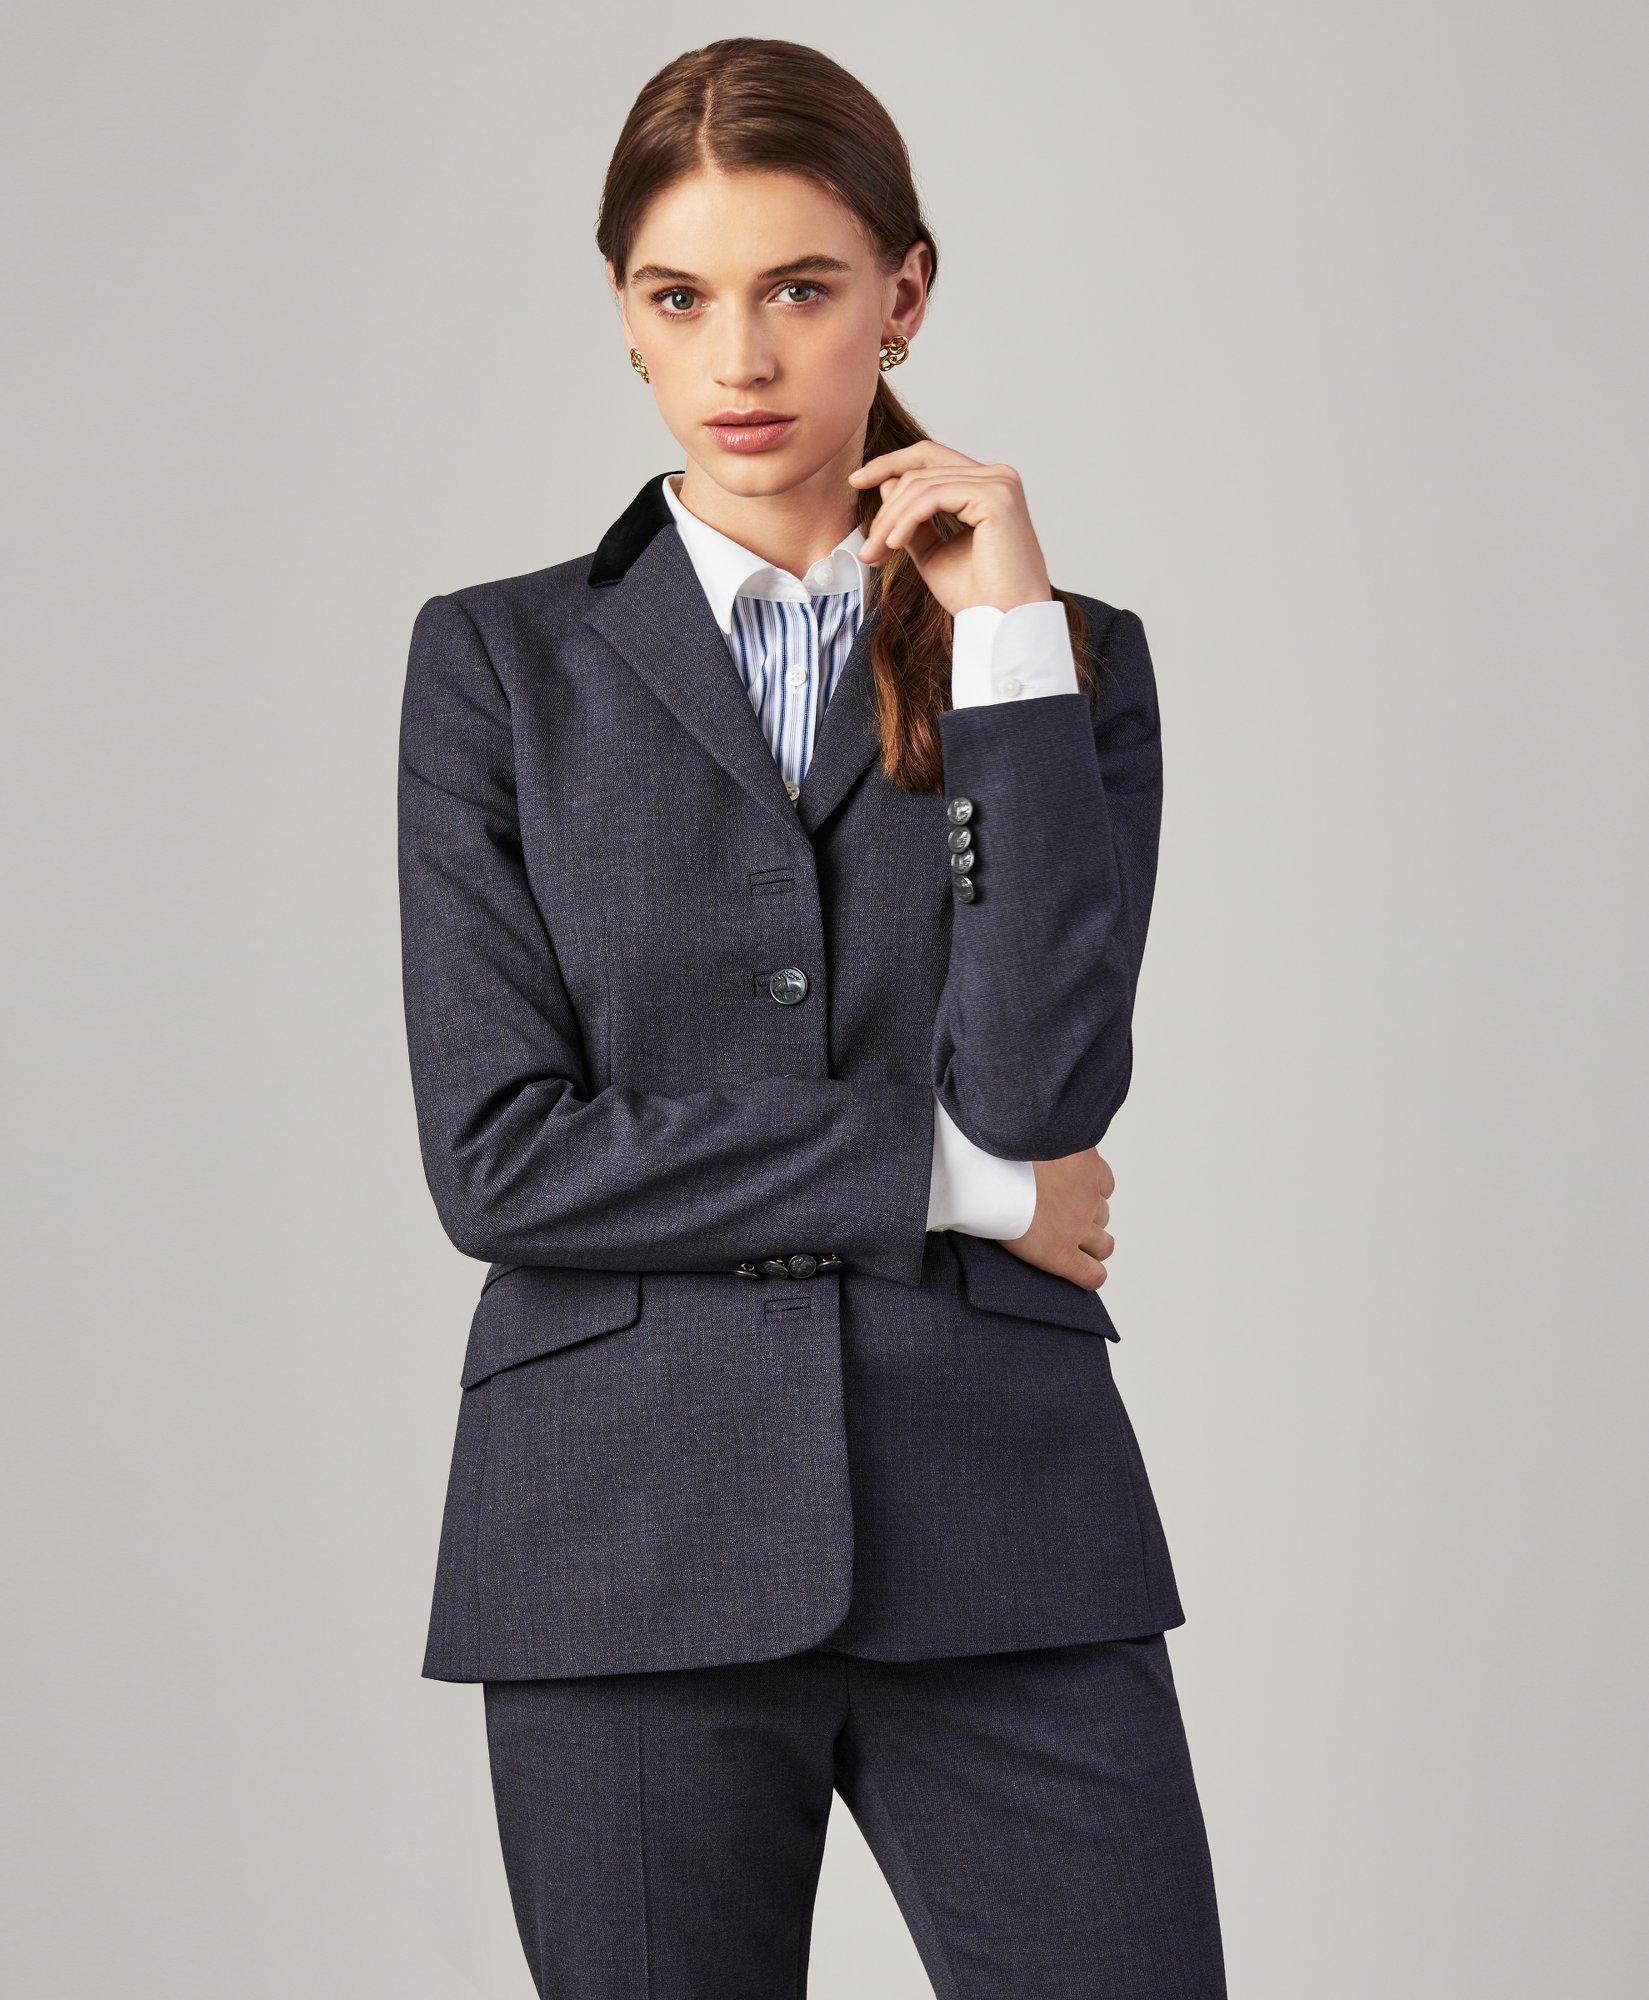 Women's Suit Sale  Suit Separates Sale | Brooks Brothers